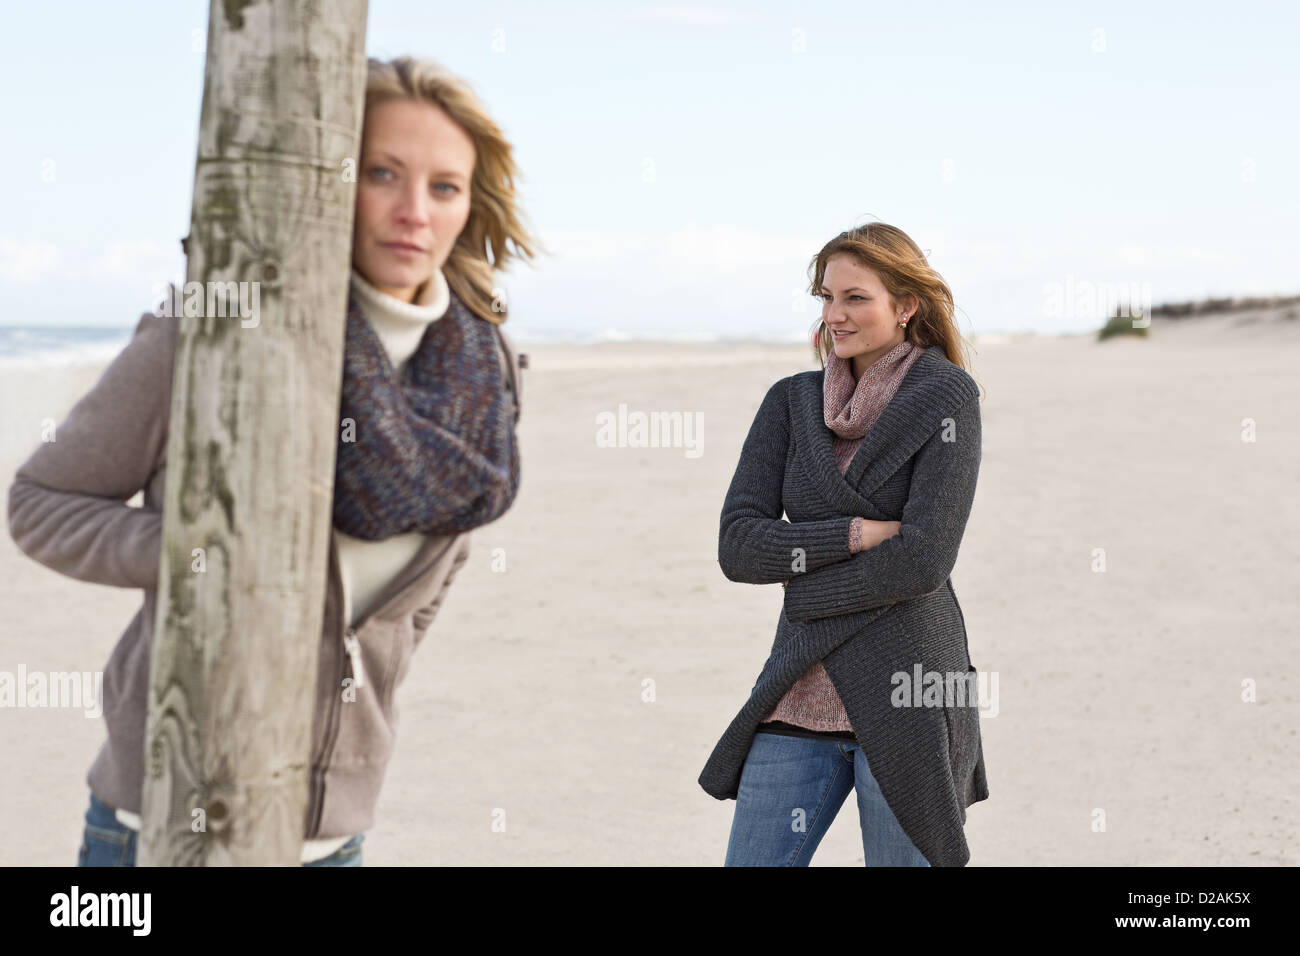 Women standing on beach Stock Photo